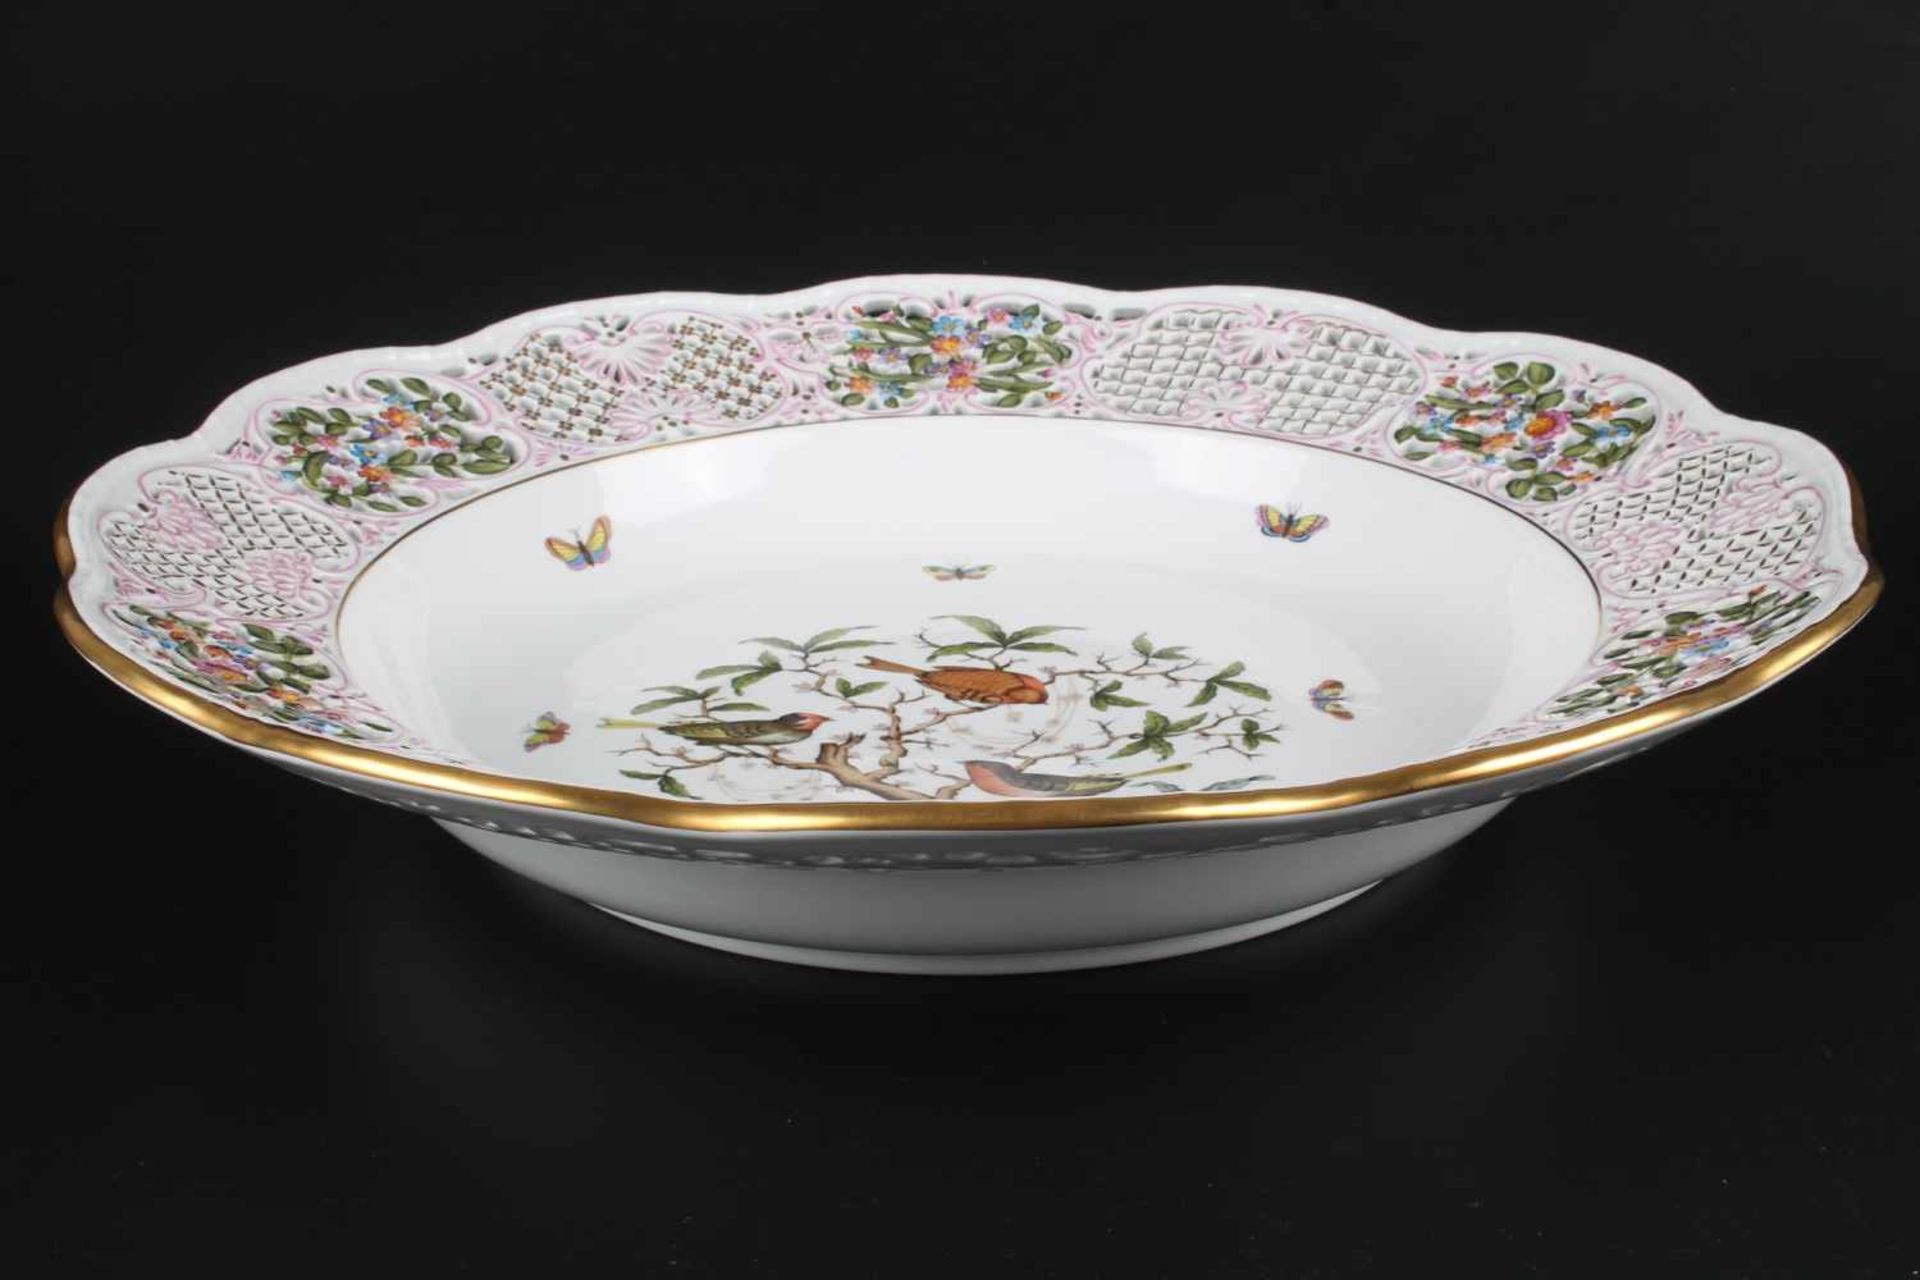 Riesige Prunkschale - Herend Rothschild #8400, bowl,Porzellan, Ungarn 20. Jahrhundert, Dekor - Image 4 of 6